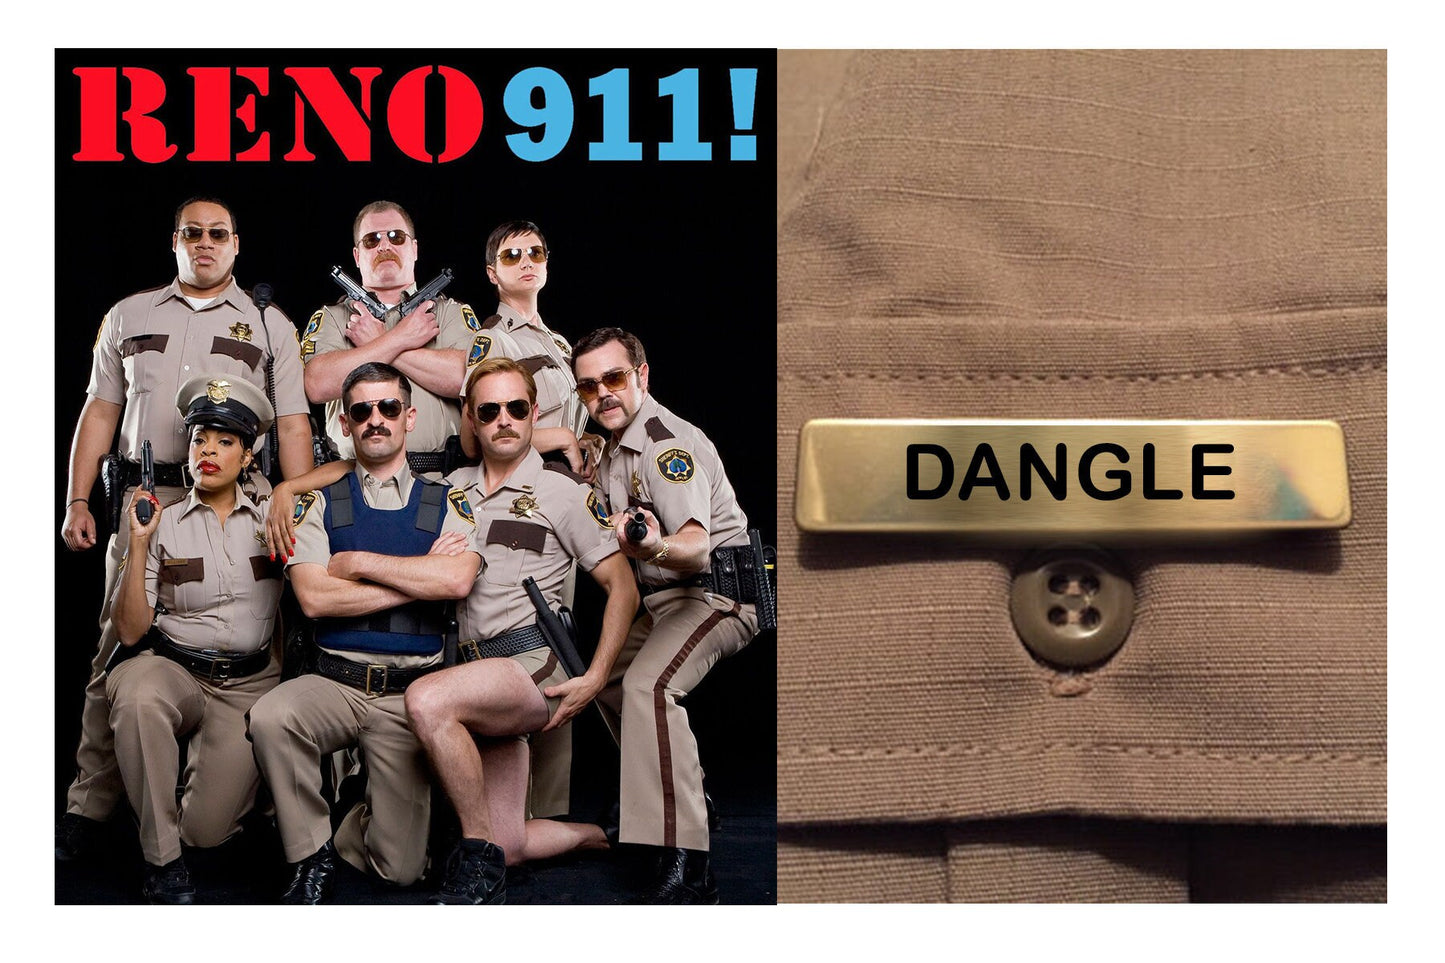 RENO 911 Sheriff Deputy Name Badge - Halloween / Cosplay Costume